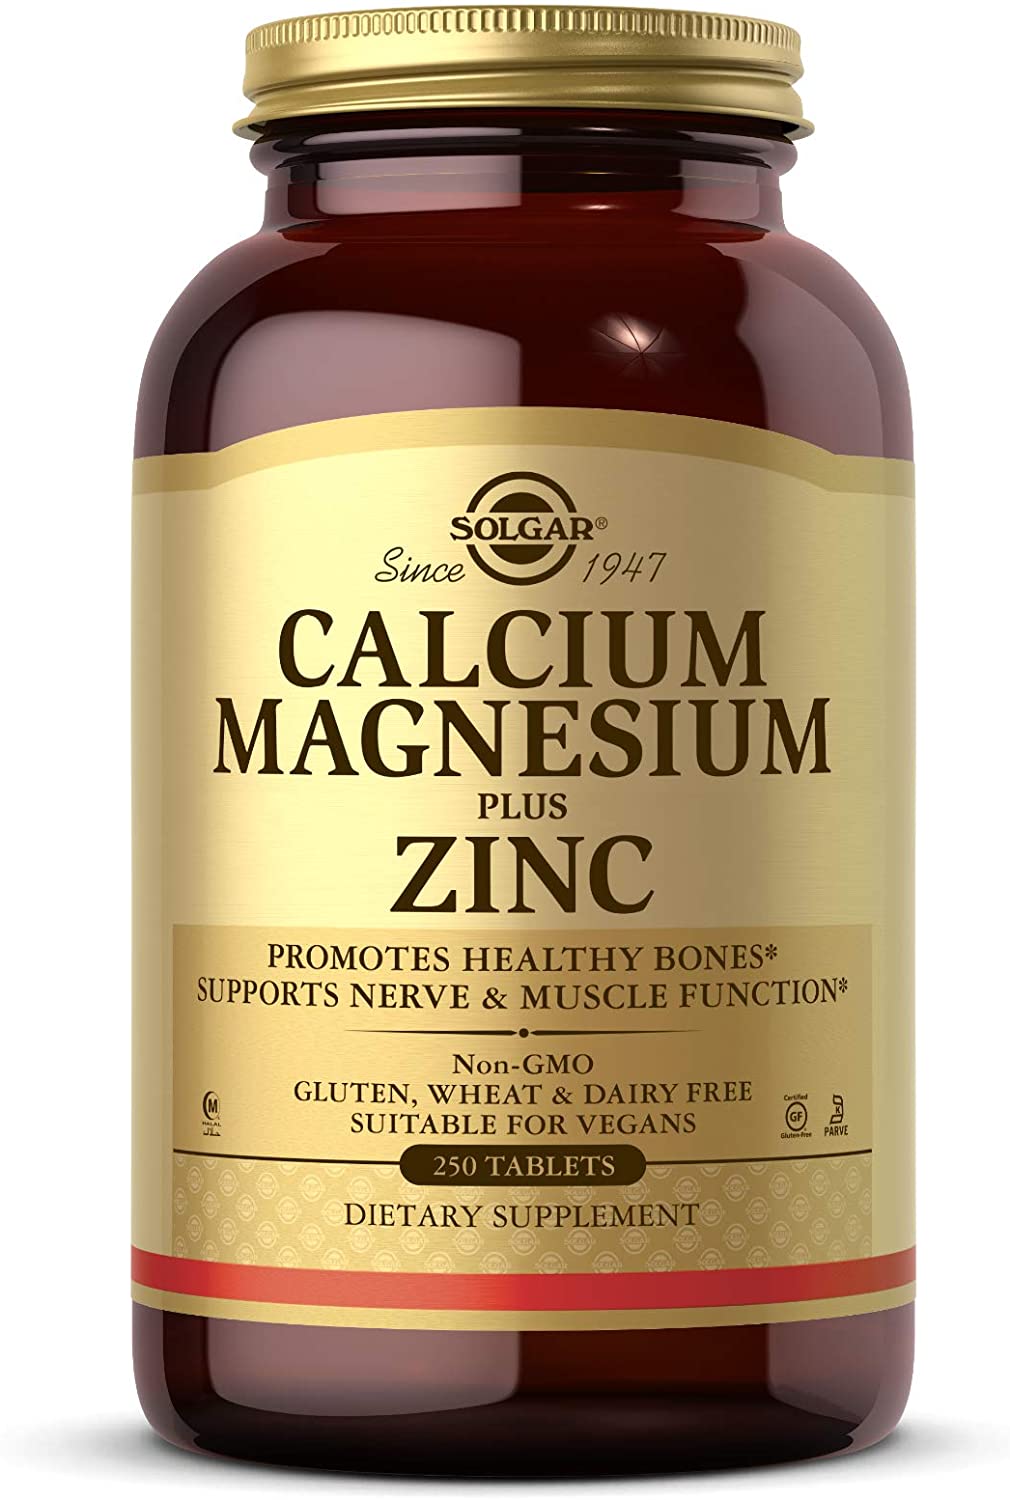 Review Calcium Magnesium Plus Zinc